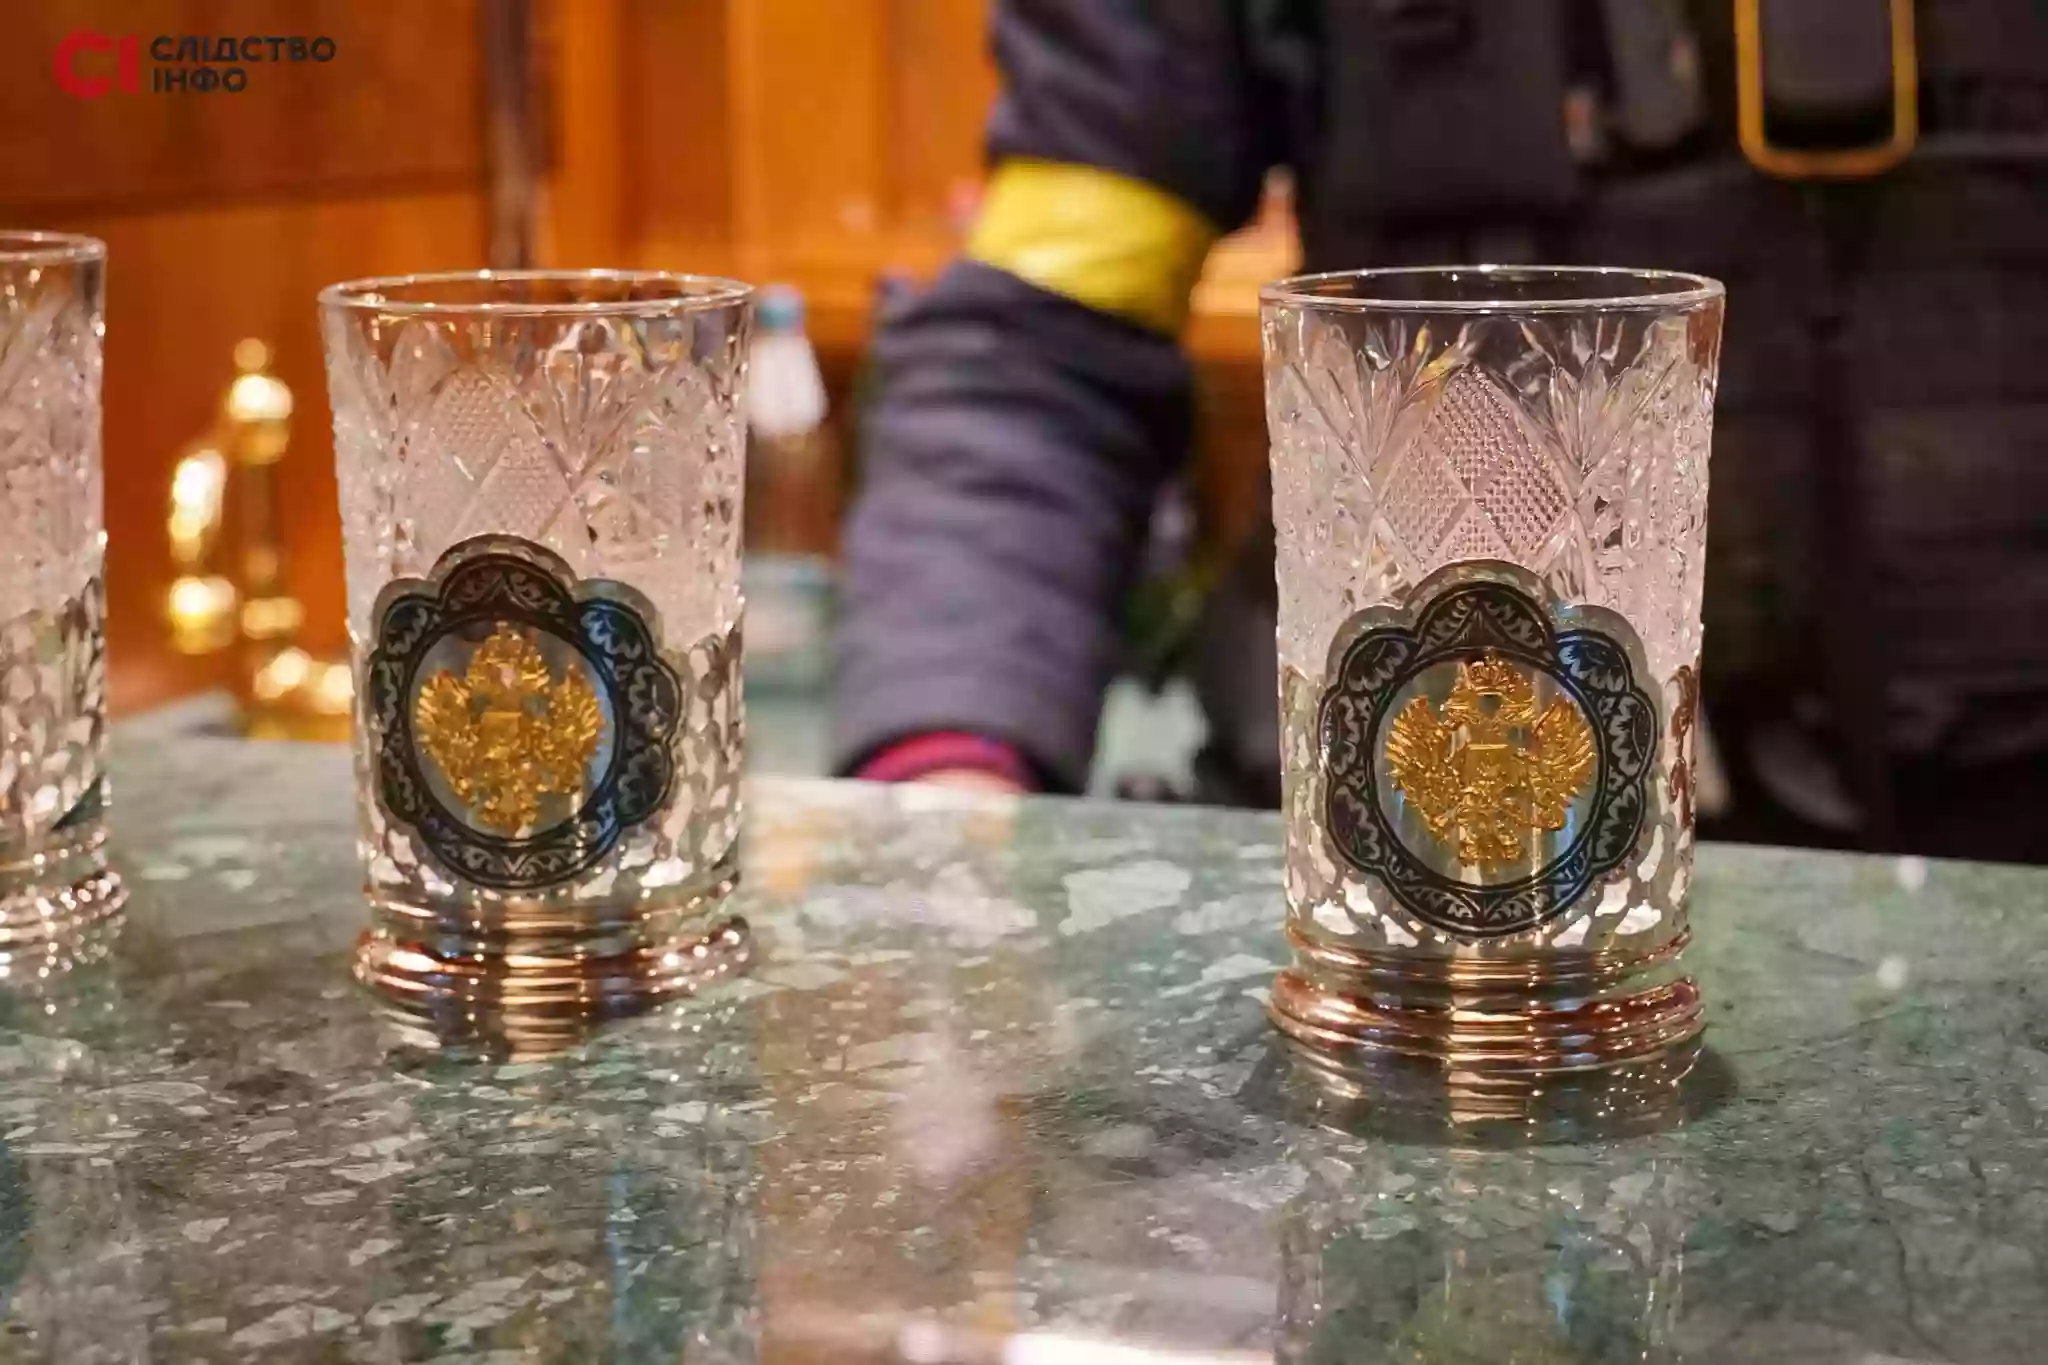 «Хворі люди». У соцмережах реагують на «золотий» самовар і склянки з гербом Росії у маєтку Медведчука